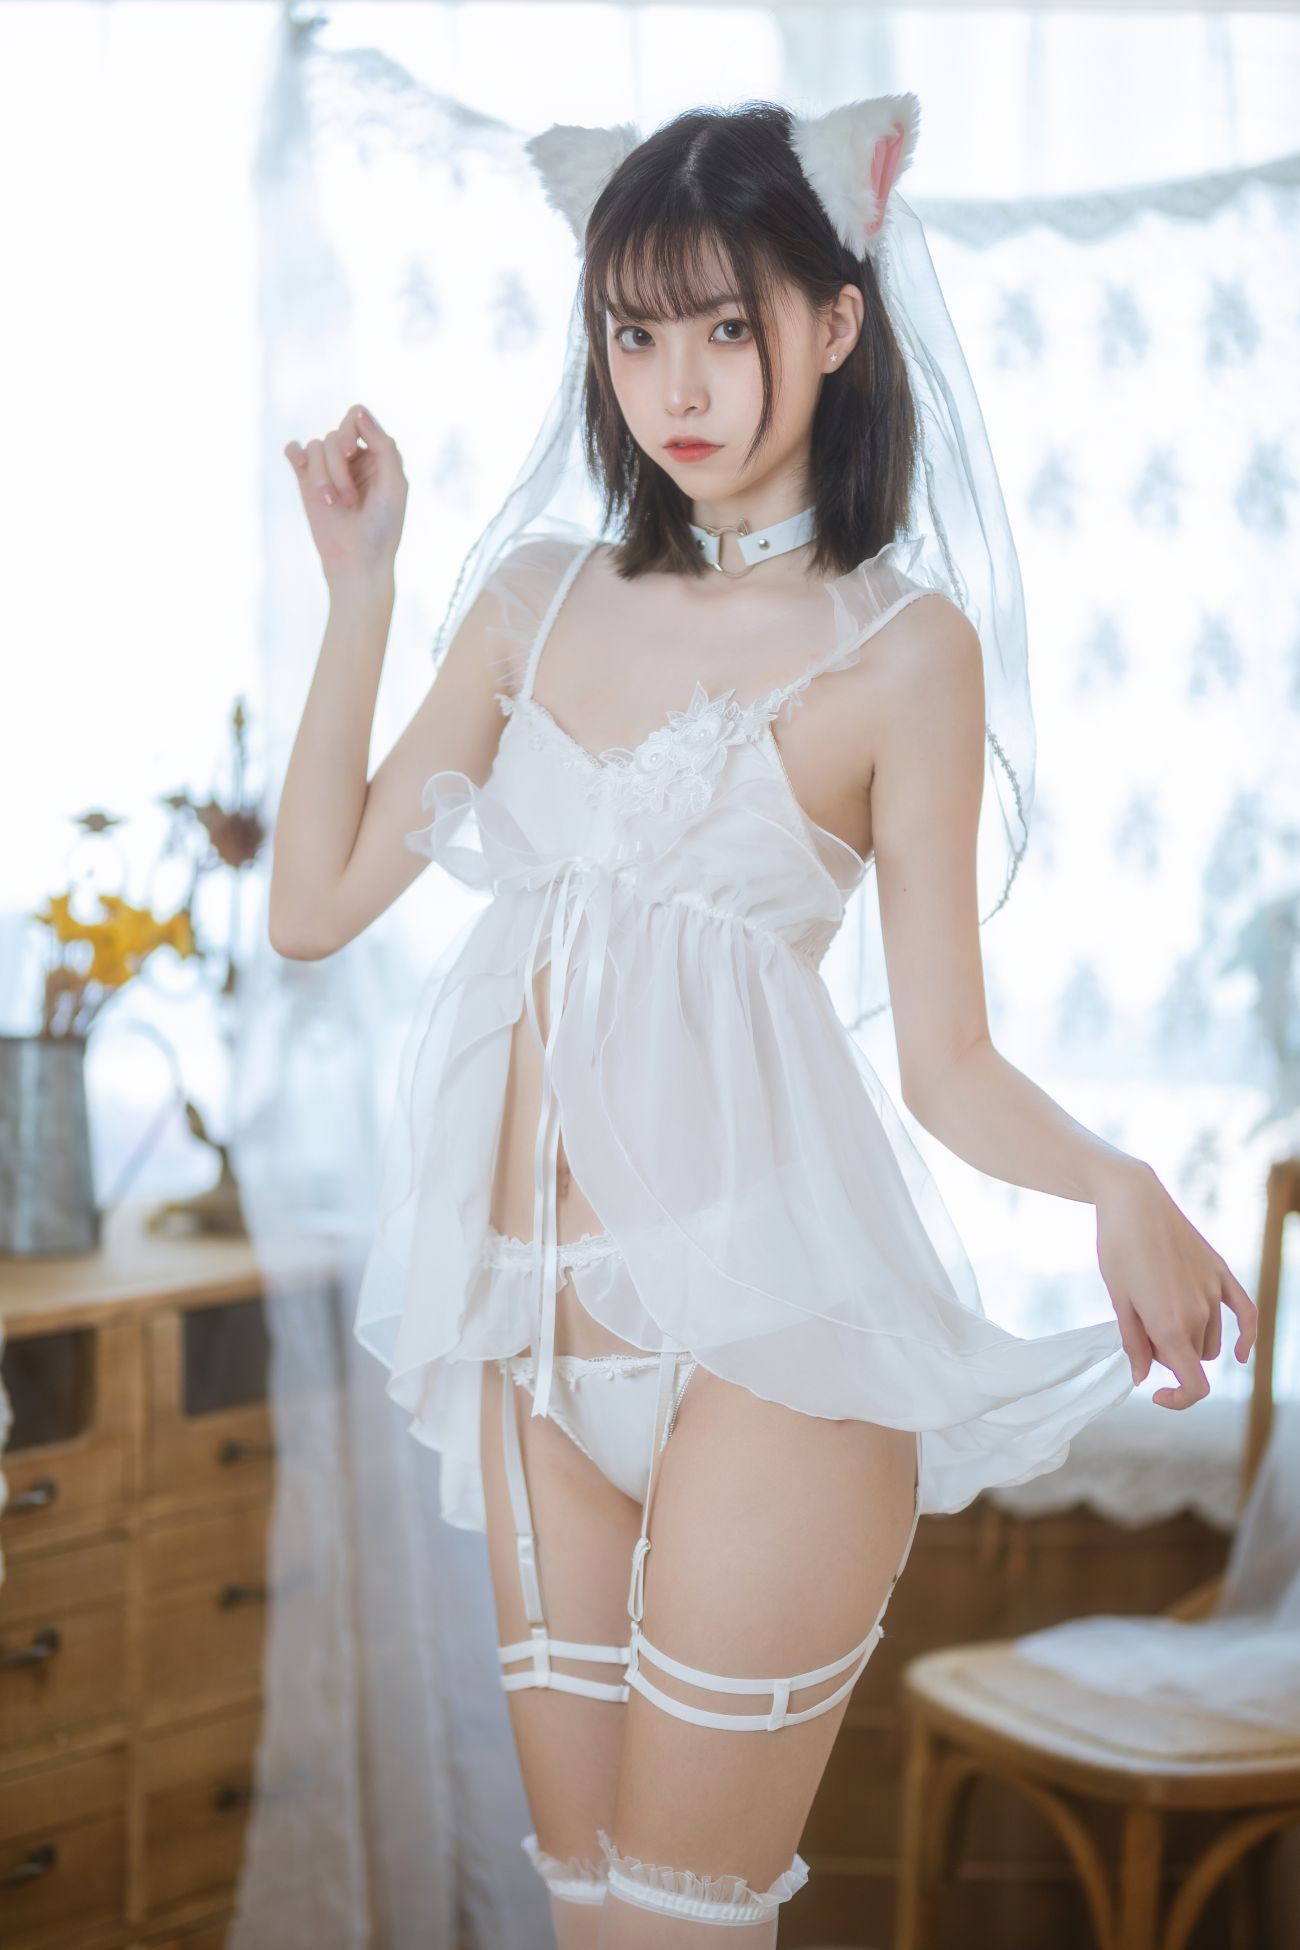 微博美少女许岚Cosplay性感写真少女白色裙 (1)